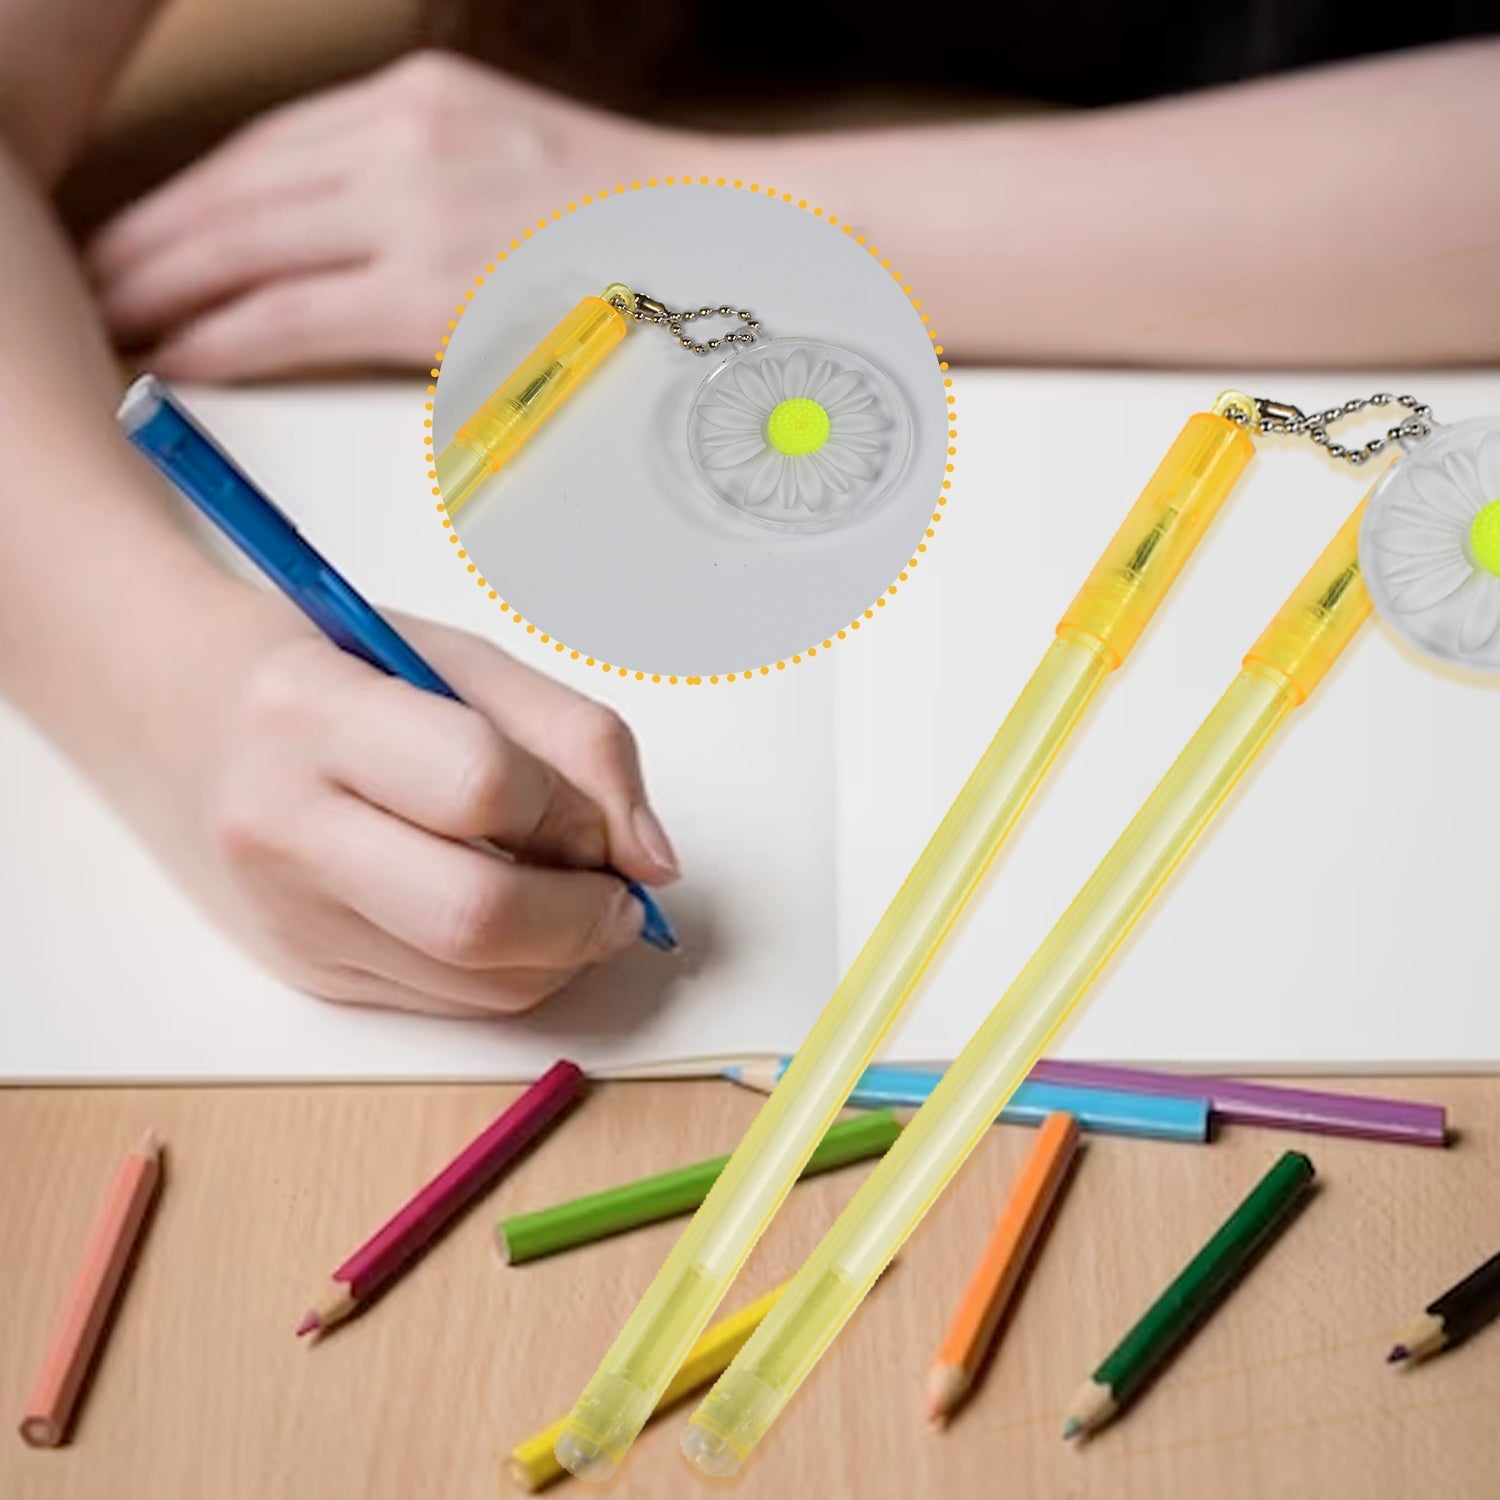 1173 Flower Fancy Pen Smooth Writing Pen Child Fancy Fun Pen For Home , Office & School Use DeoDap